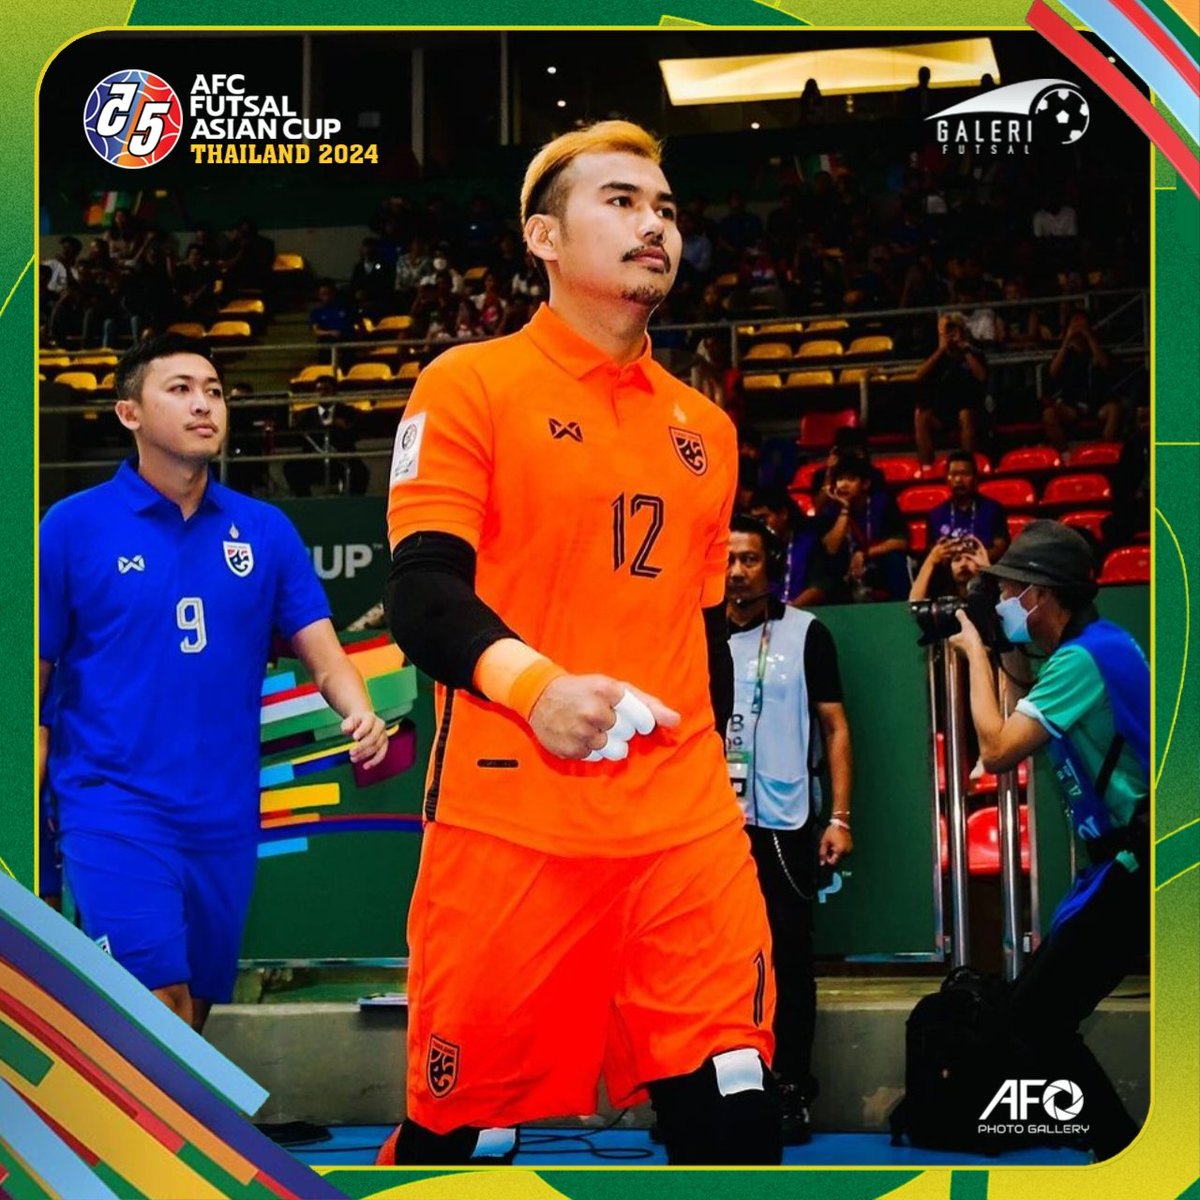 SERUUUUUUU ‼️
Katawut Hankampa menjadi aktor kemenangan Thailand di babak adu pinalti melawan Tajikistan.

Thailand melaju ke partai puncak AFC Futsal 2024. 🔥🔥🔥

#GaleriFutsal #ACFutsal2024